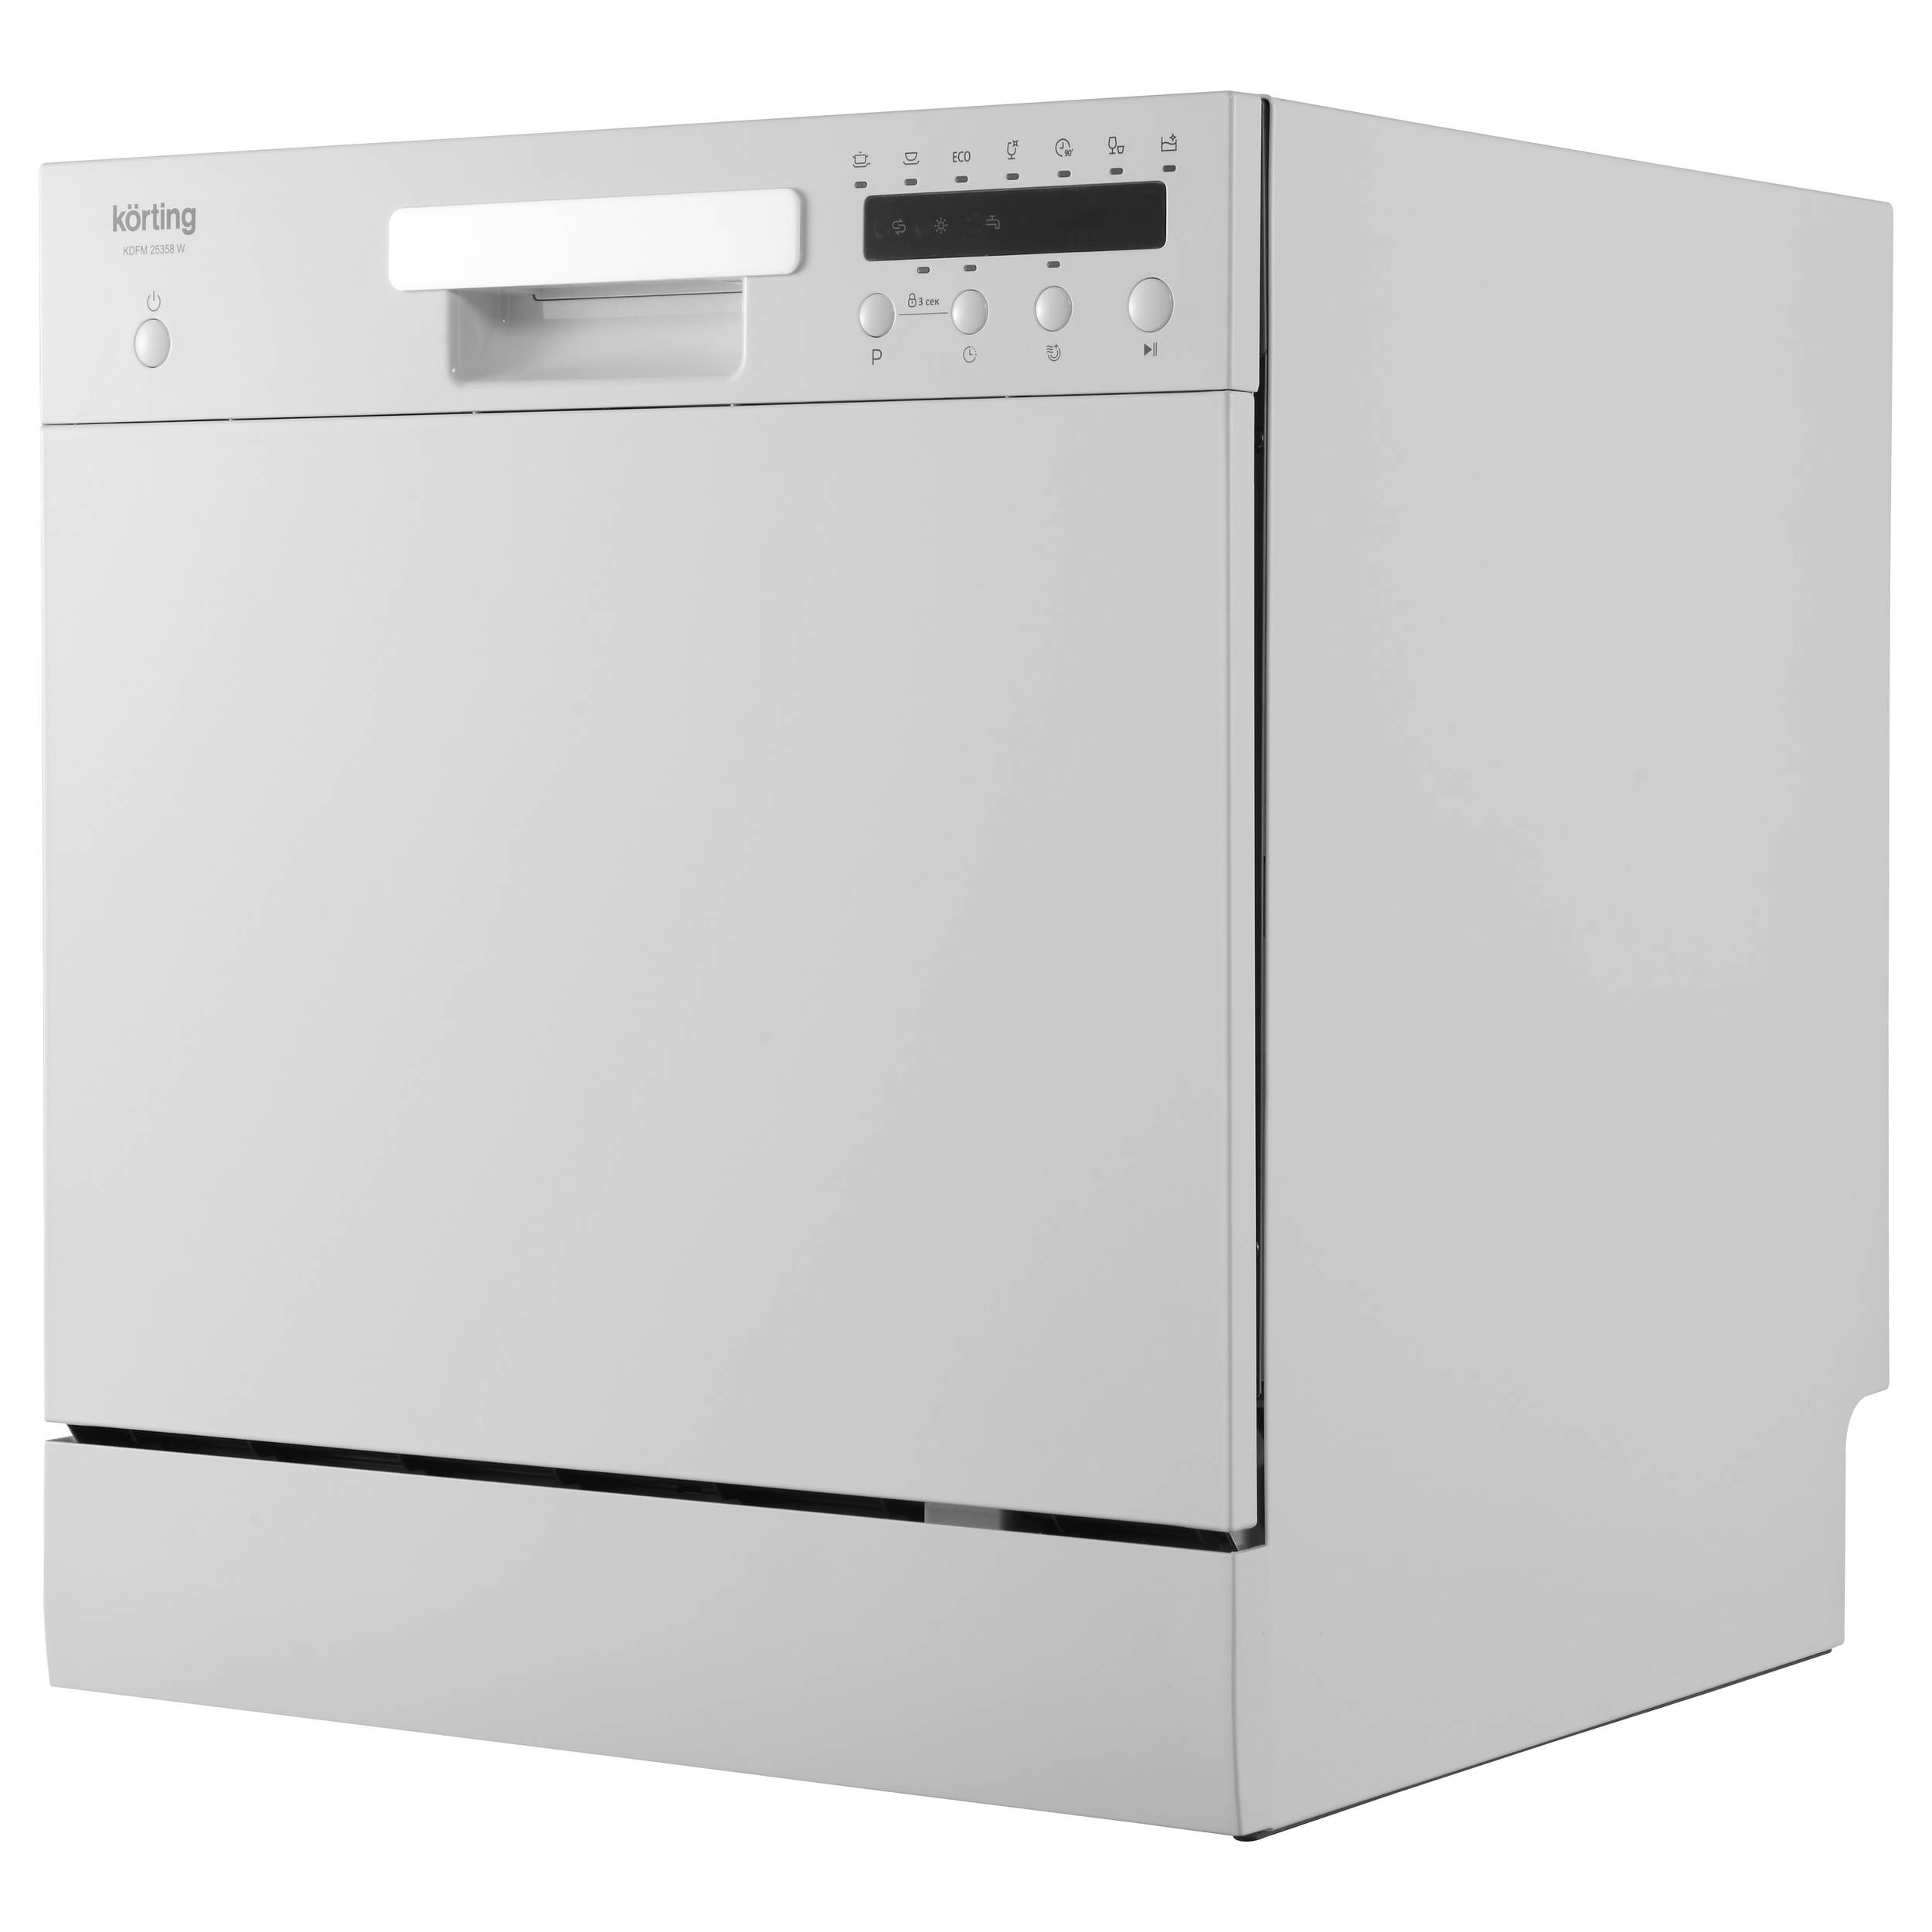 Посудомоечная машина Korting KDFM 25358 W белый посудомоечная машина korting kdfm 25358 s серебристая